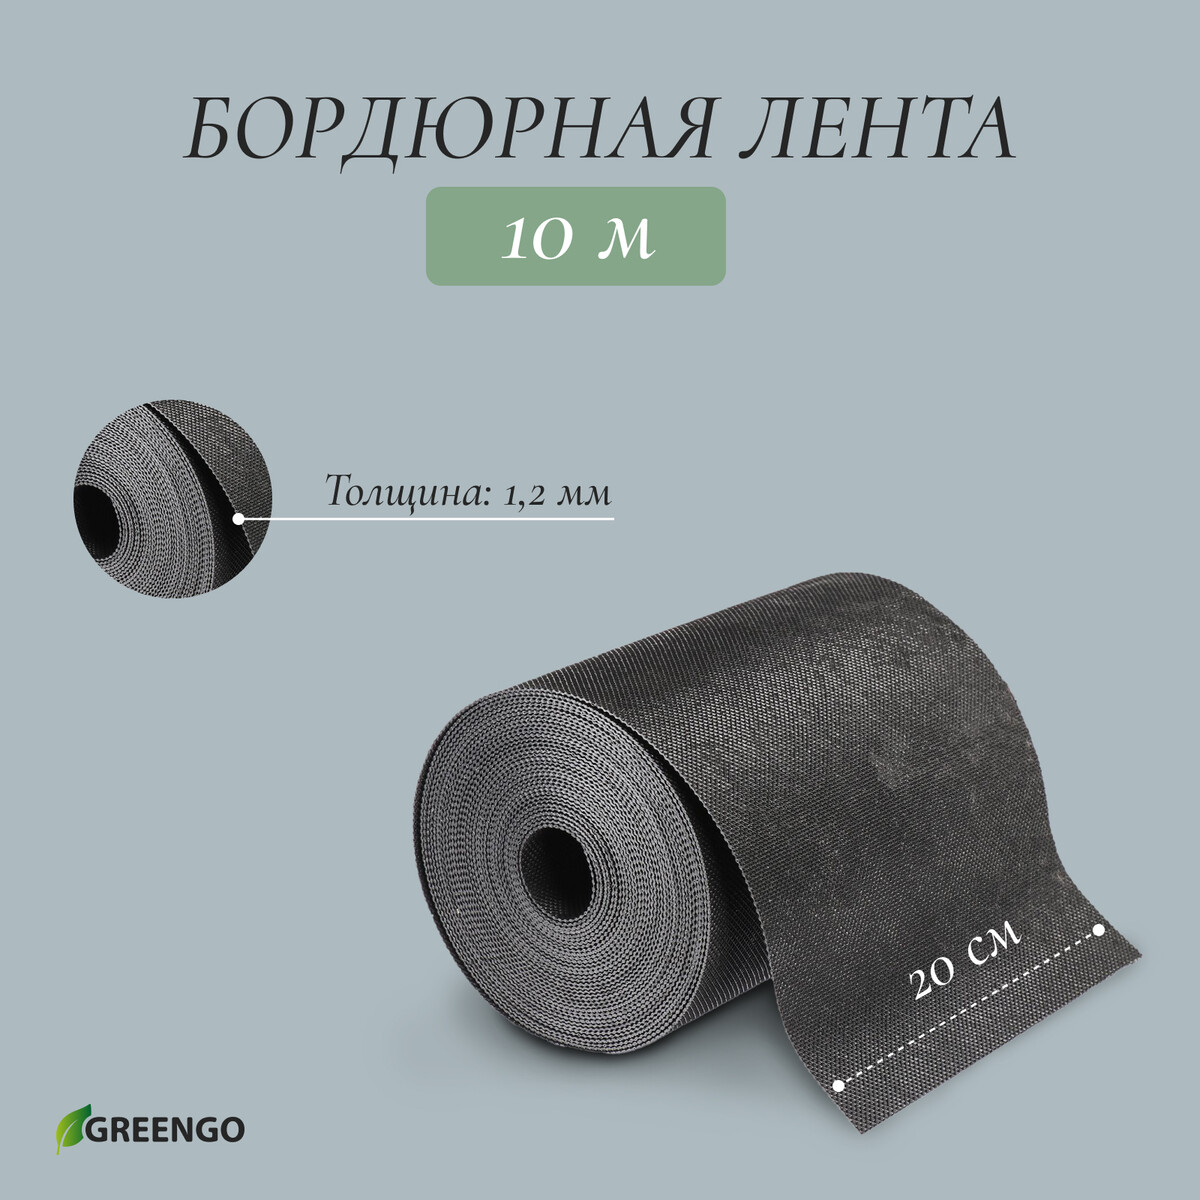 Лента бордюрная, 0.2 × 10 м, толщина 1.2 мм, пластиковая, черная, greengo кассета для рассады на 9 ячеек по 80 мл пластиковая черная 18 × 13 × 6 см greengo